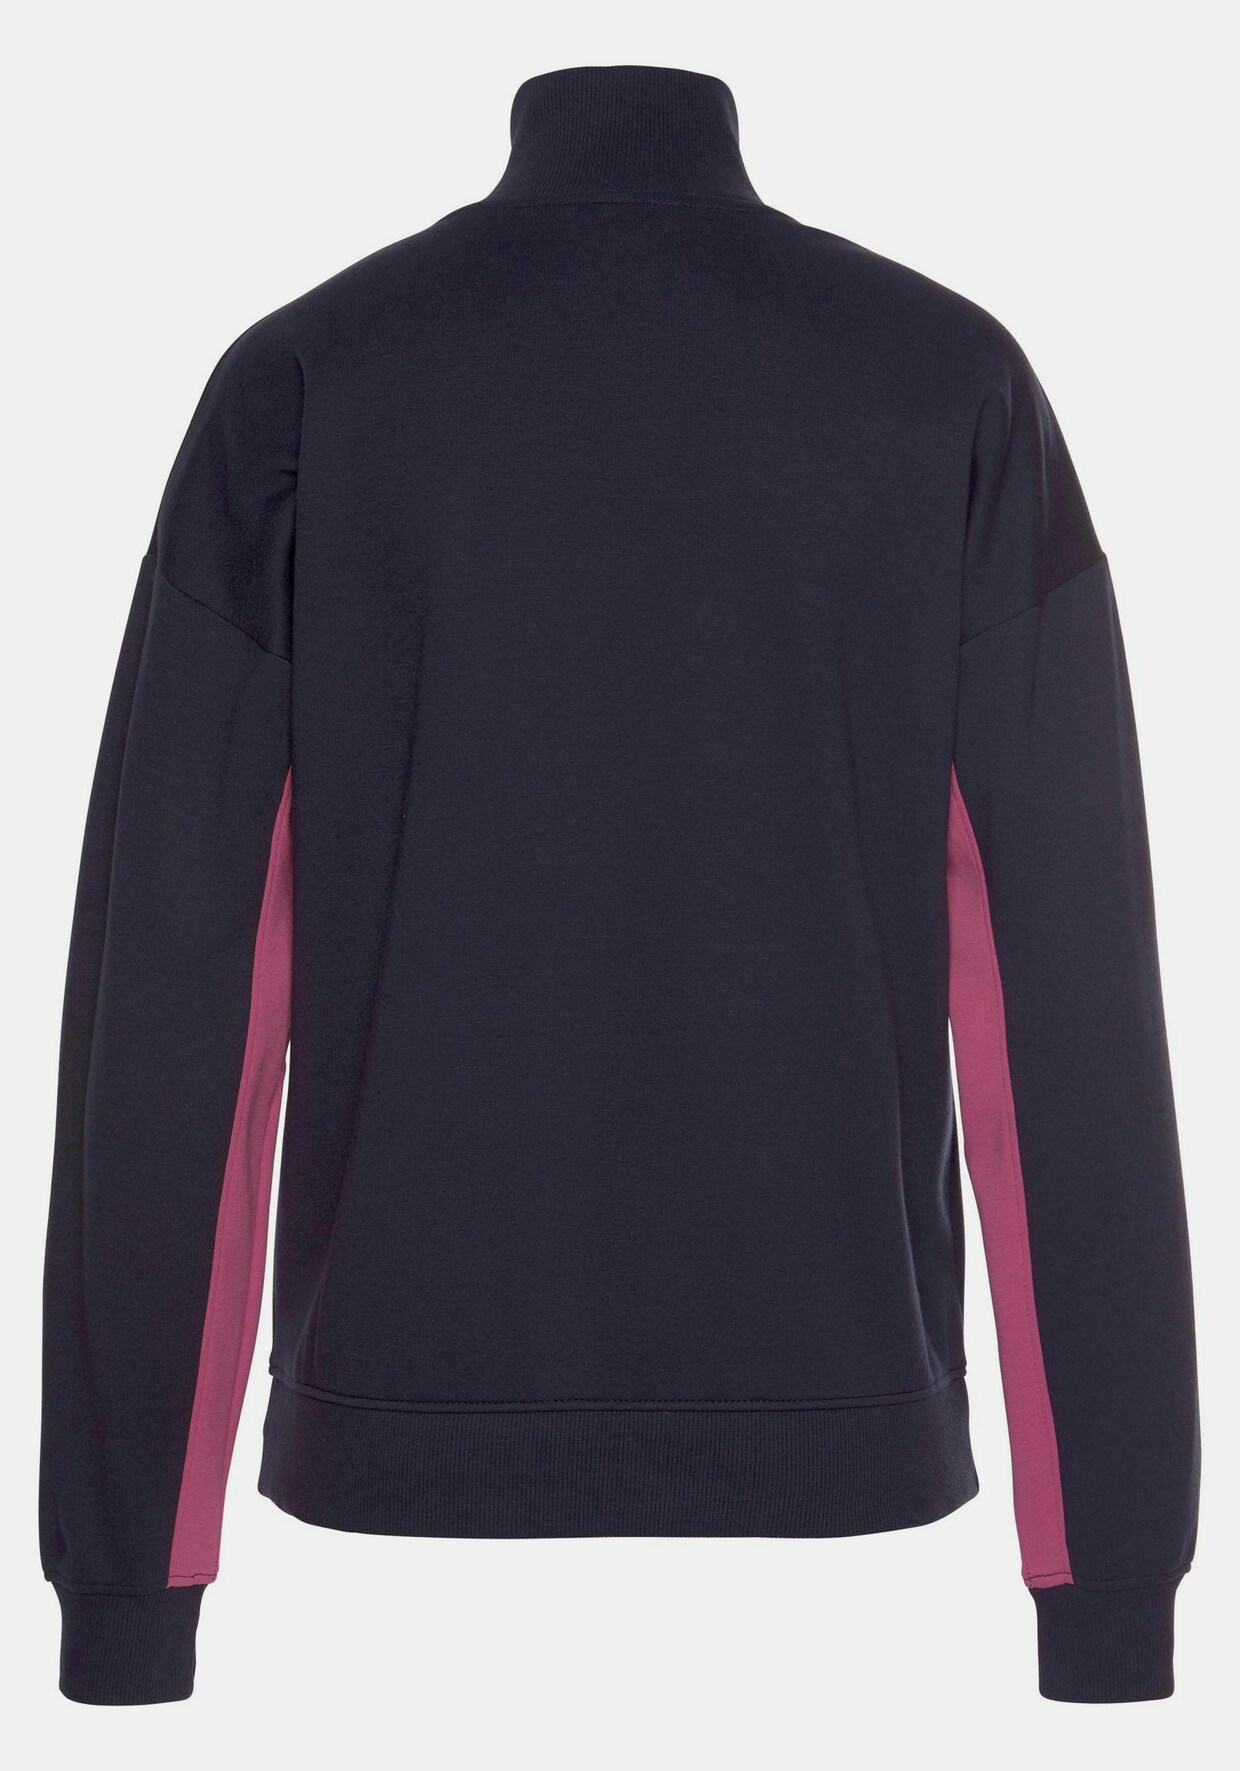 Bench. Sweatshirt - navy-pink